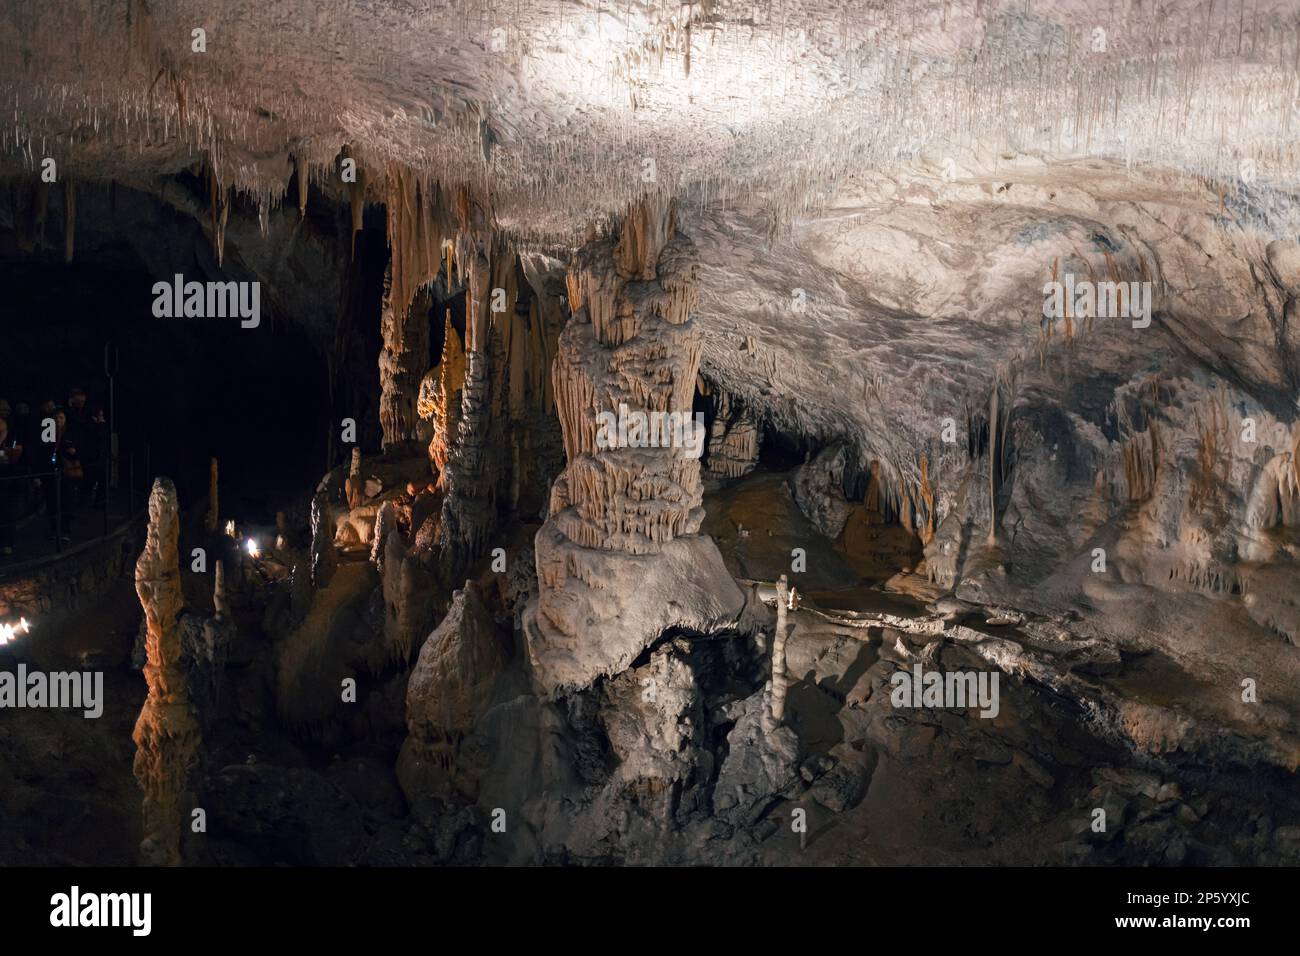 Dripstone column in the tourist attraction cave of Postojna, located in Slovenia. Stock Photo